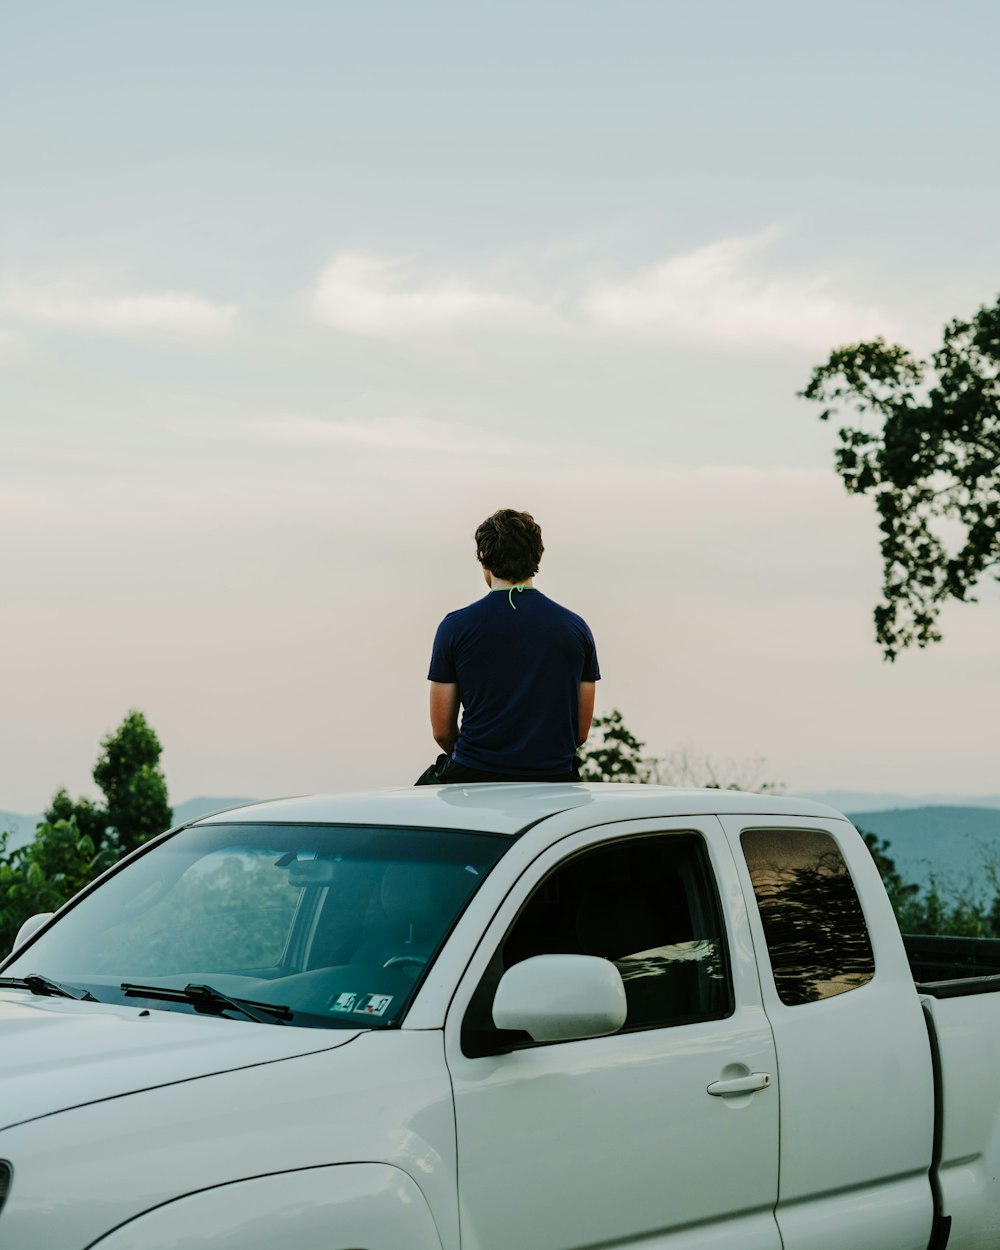 Mann im blauen Hemd steht tagsüber neben weißem SUV